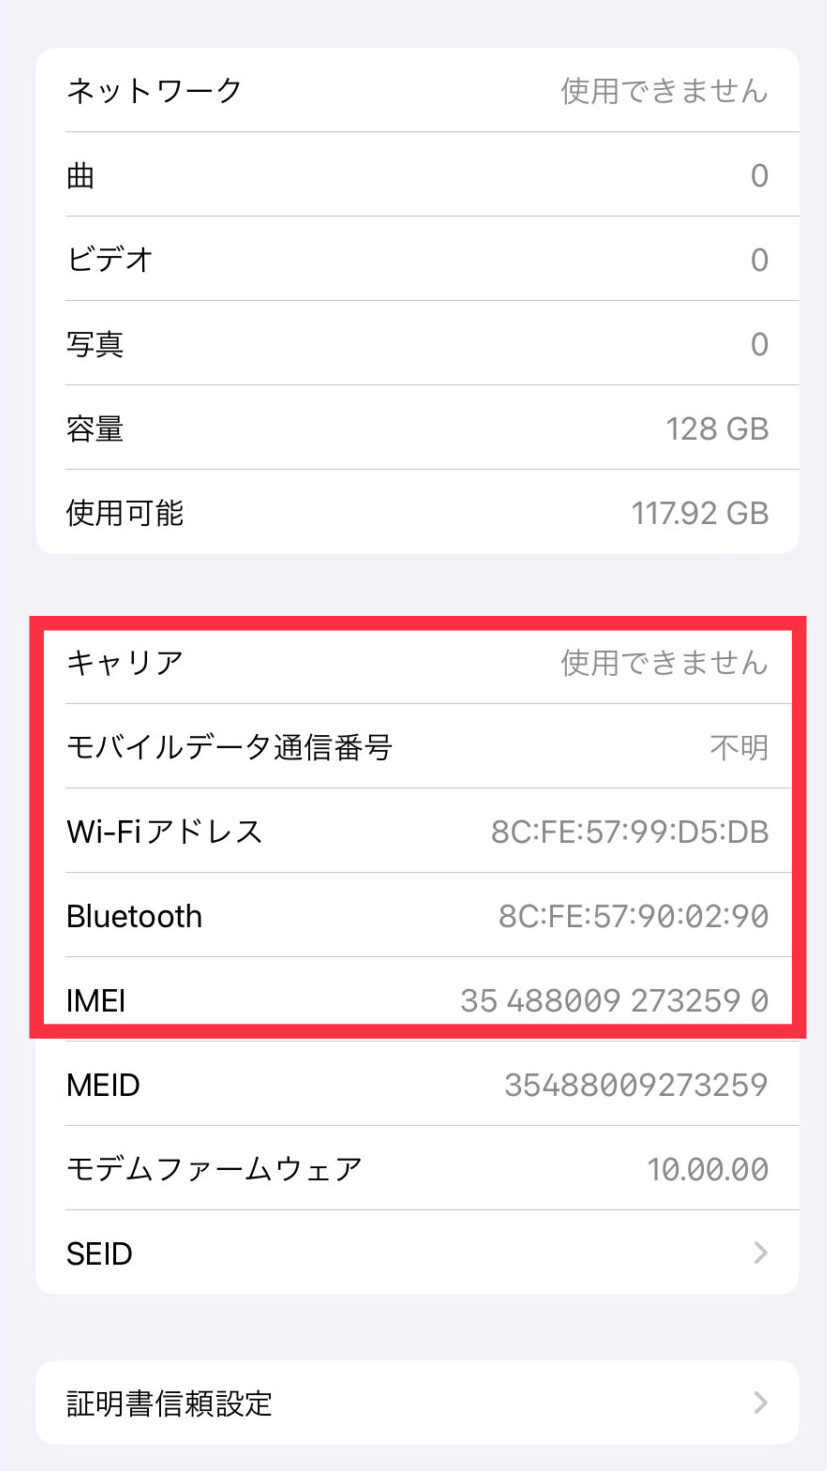 タブレットiPad pro 9.7 wifi+Cellular 128GB sim解除